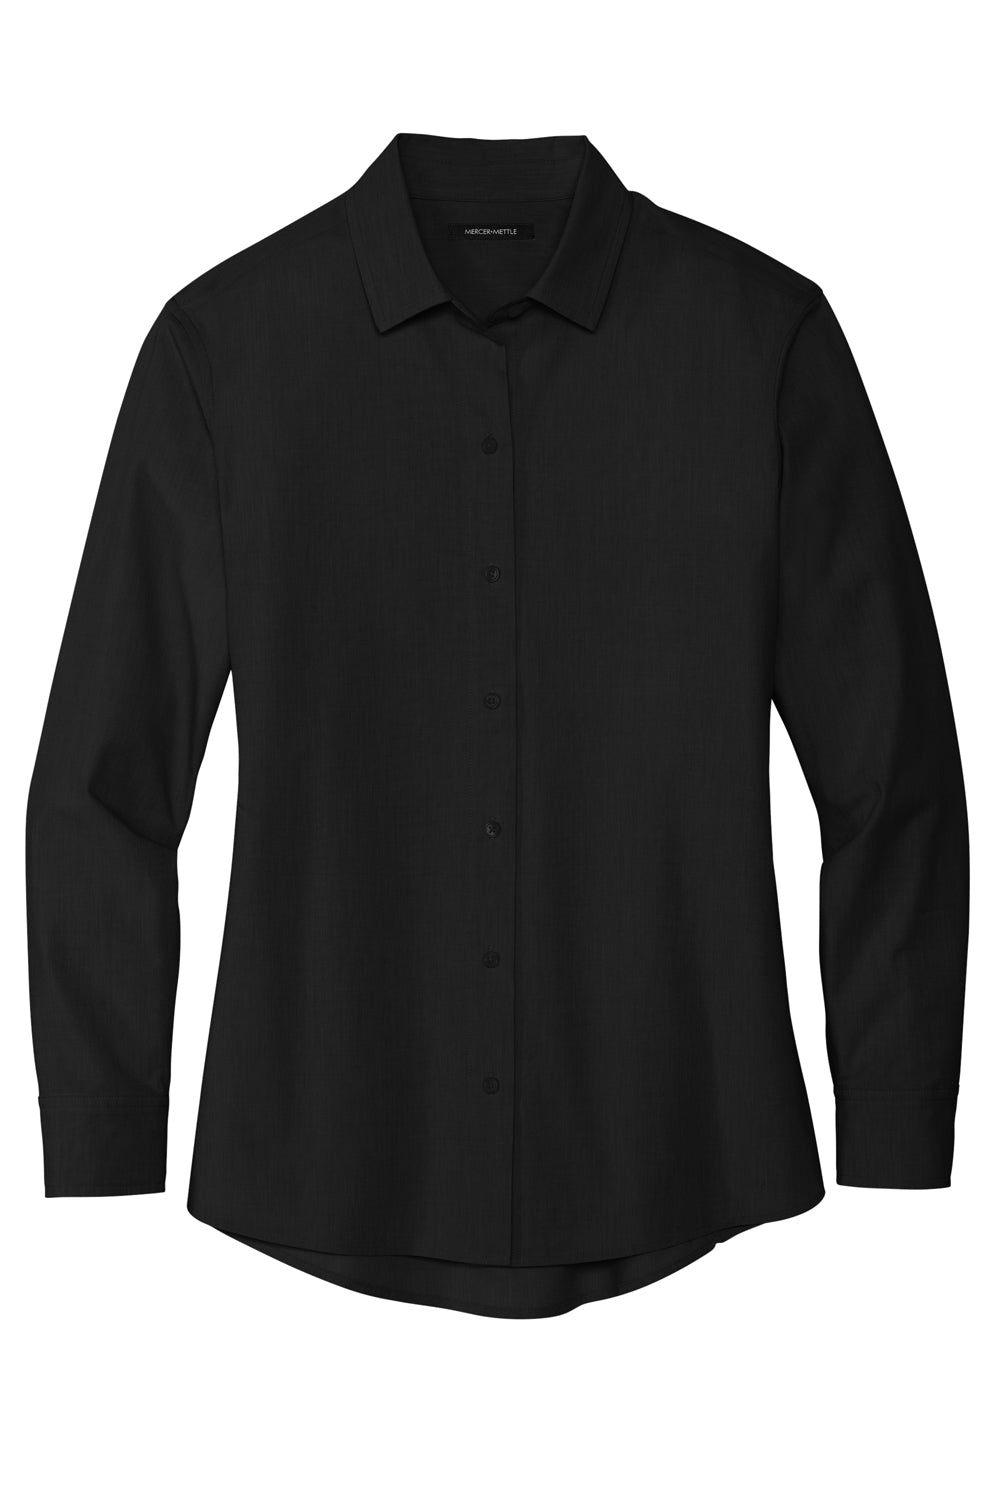 Mercer+Mettle MM2001 Stretch Woven Long Sleeve Button Down Shirt Deep Black Flat Front